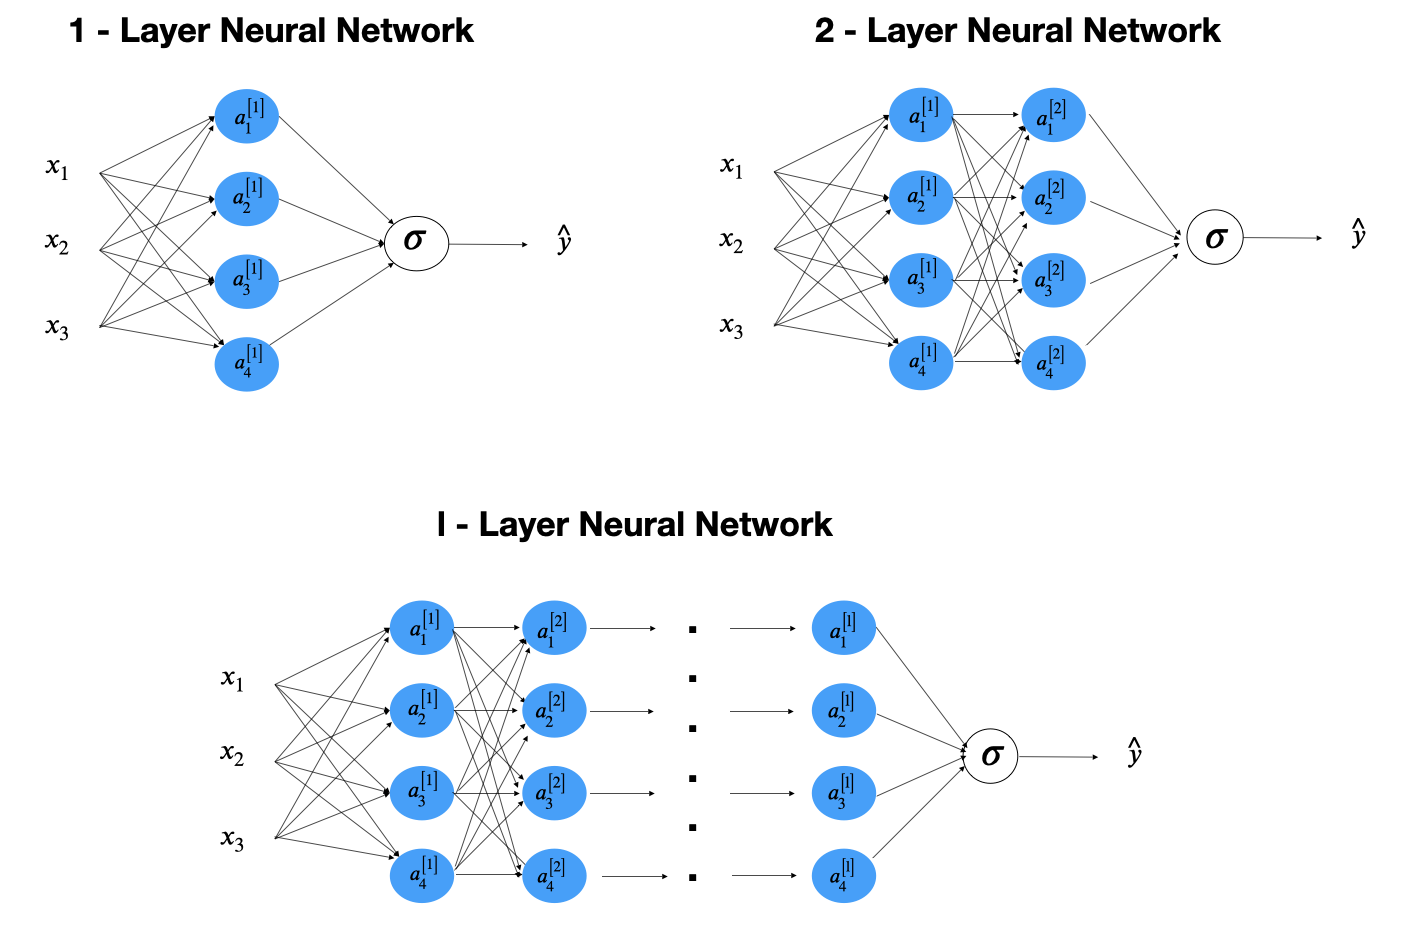 Feedforward Neural Network